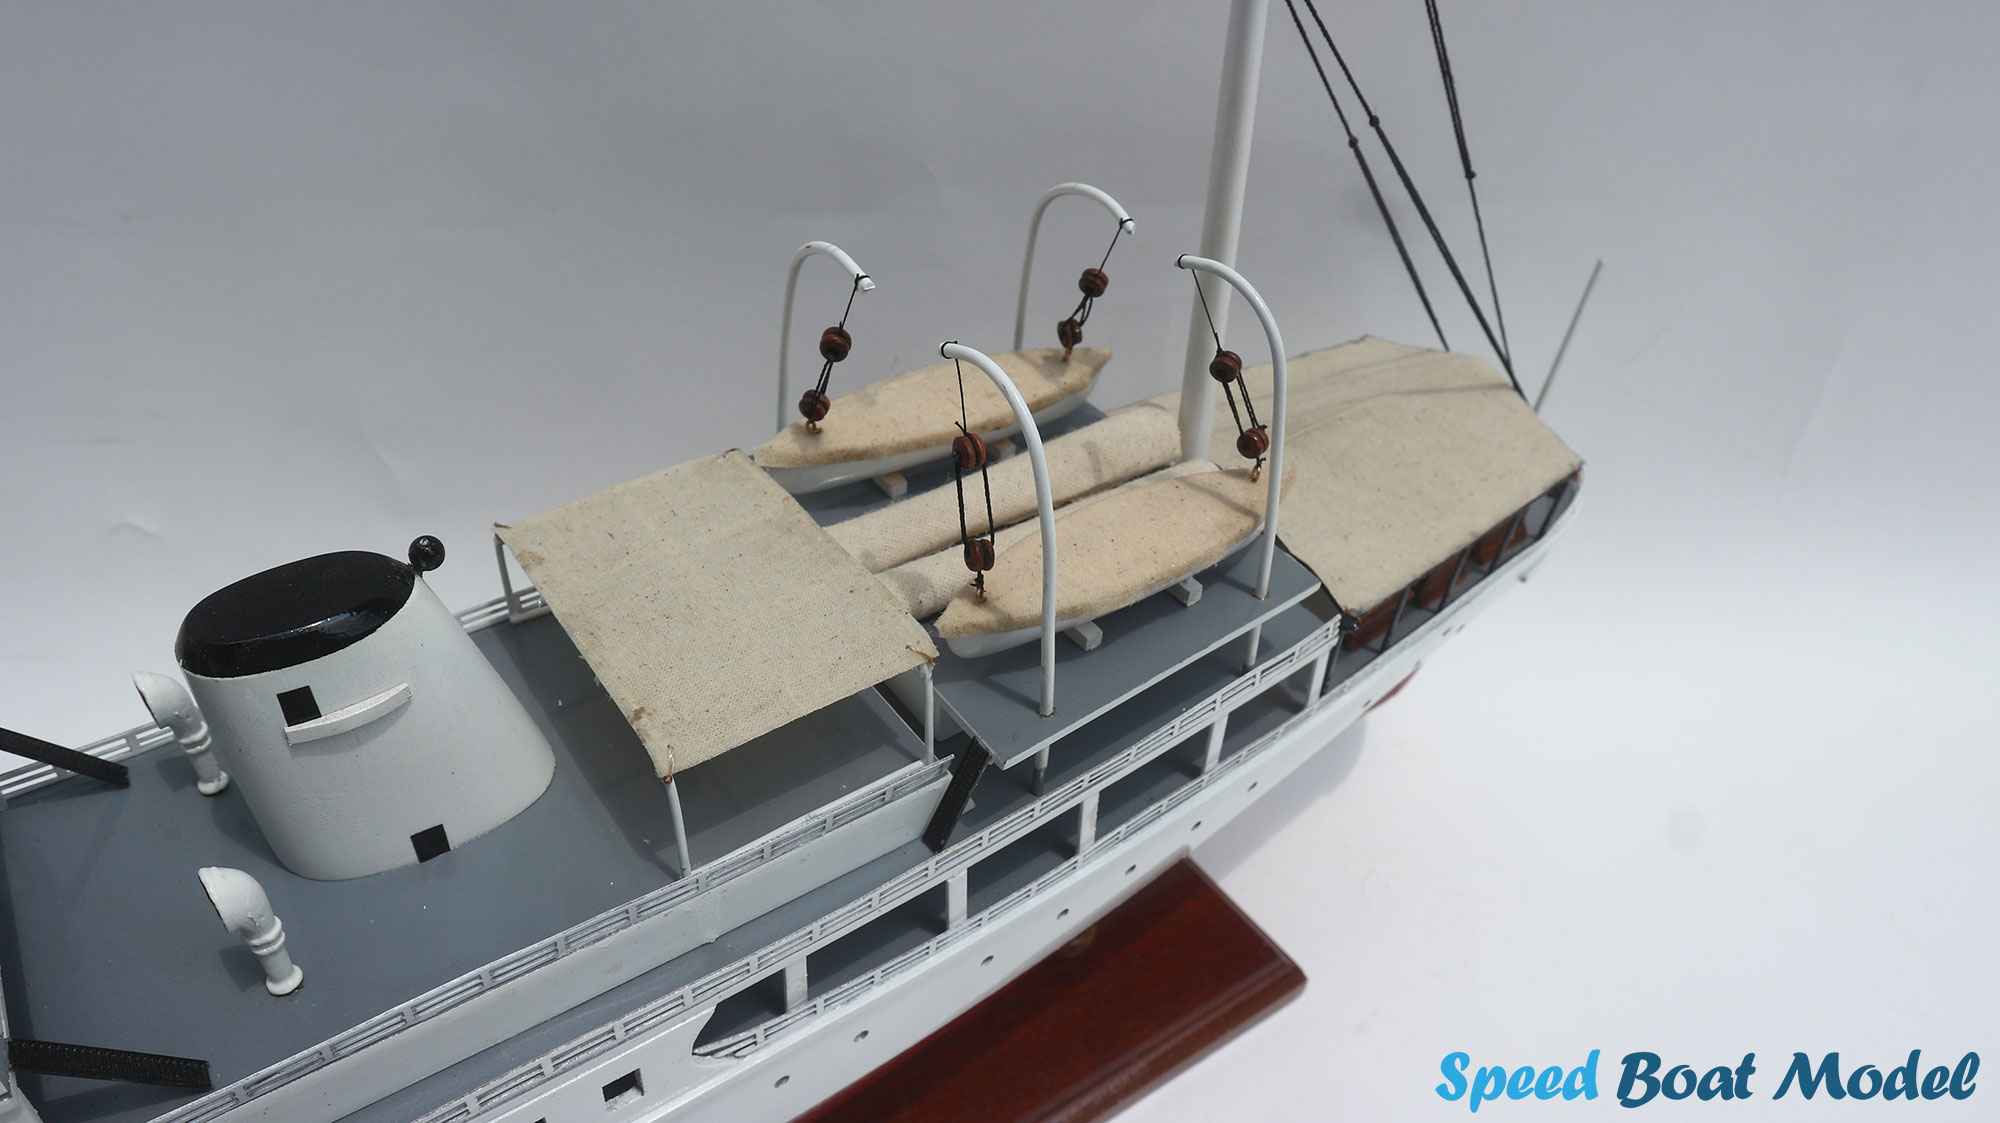 Scheherazade Ocean Liner Model 27.9"